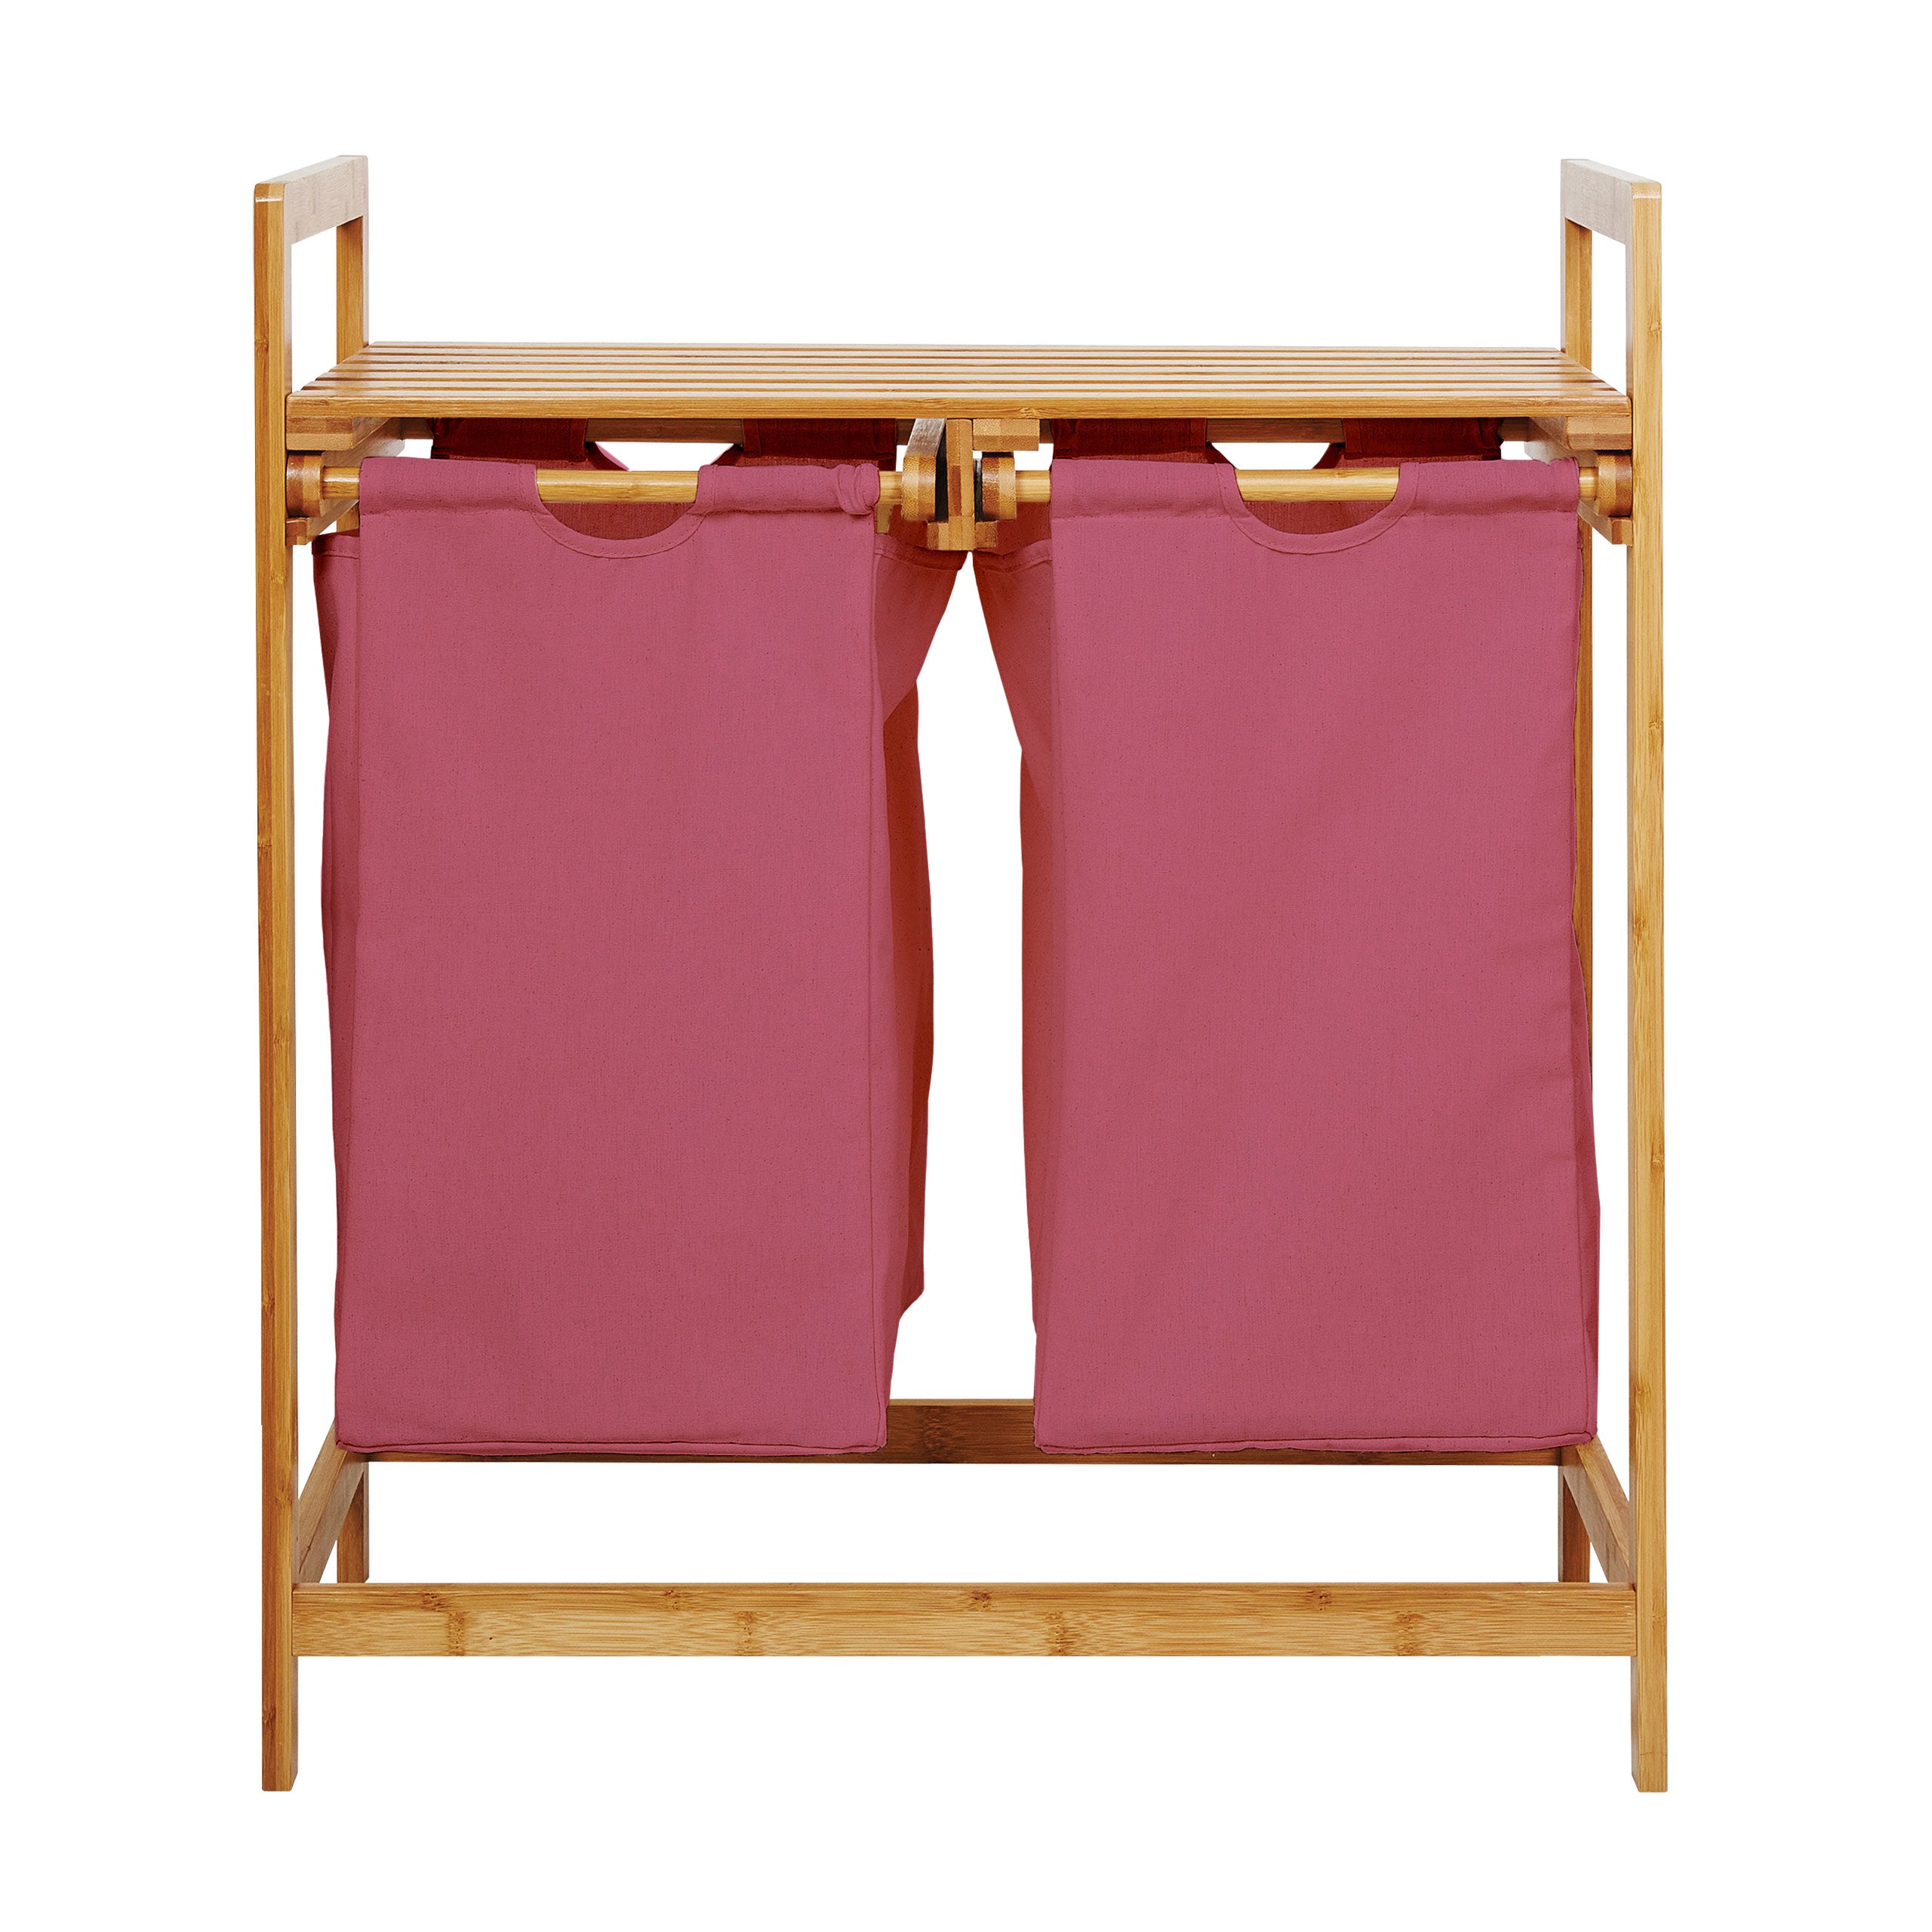 Bambus Wäschekorb mit 2 ausziehbaren Wäschesacken - 73 x 64 x 33 cm - Rosa